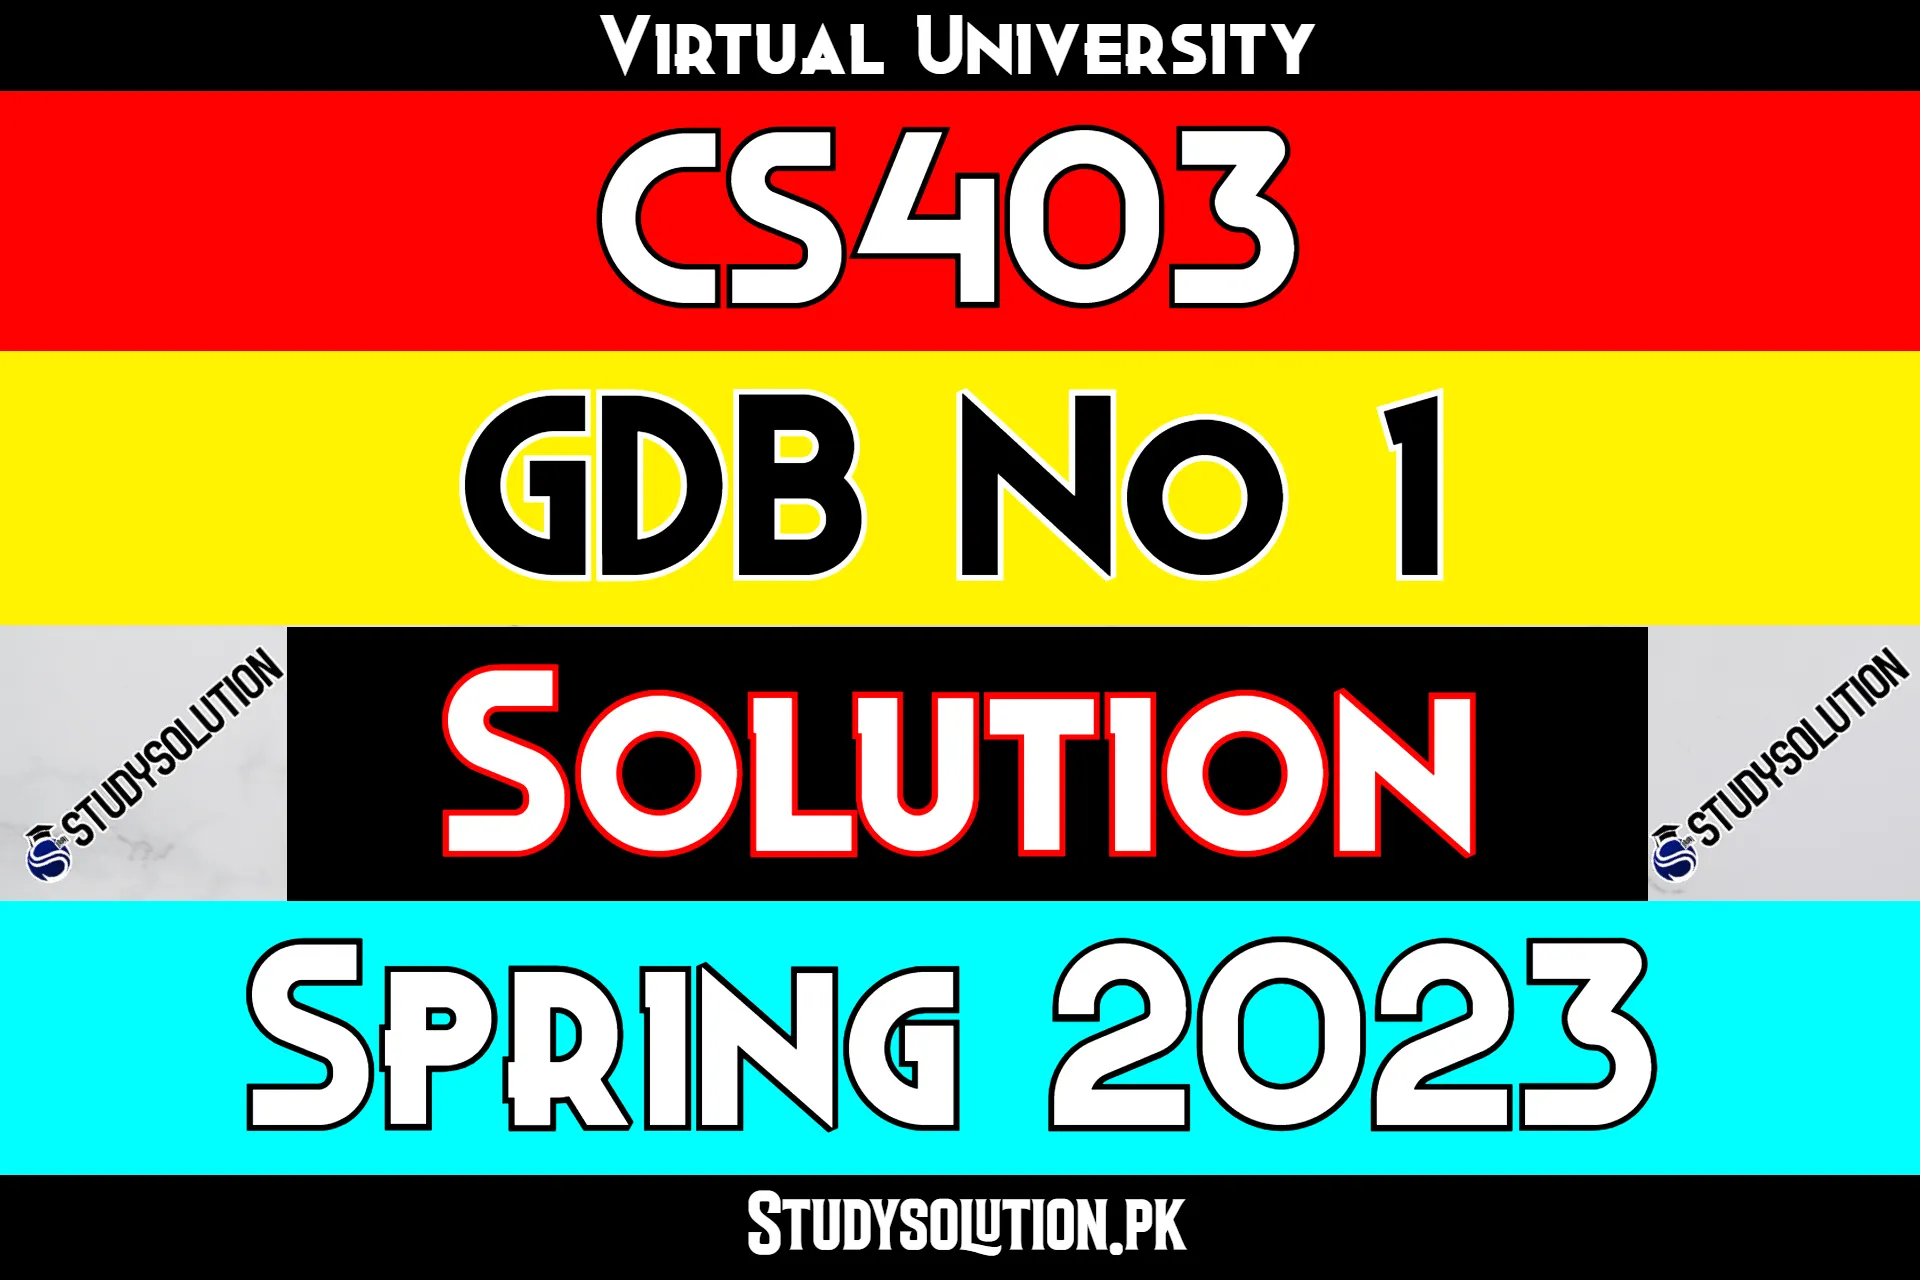 CS403 GDB No 1 Solution Spring 2023